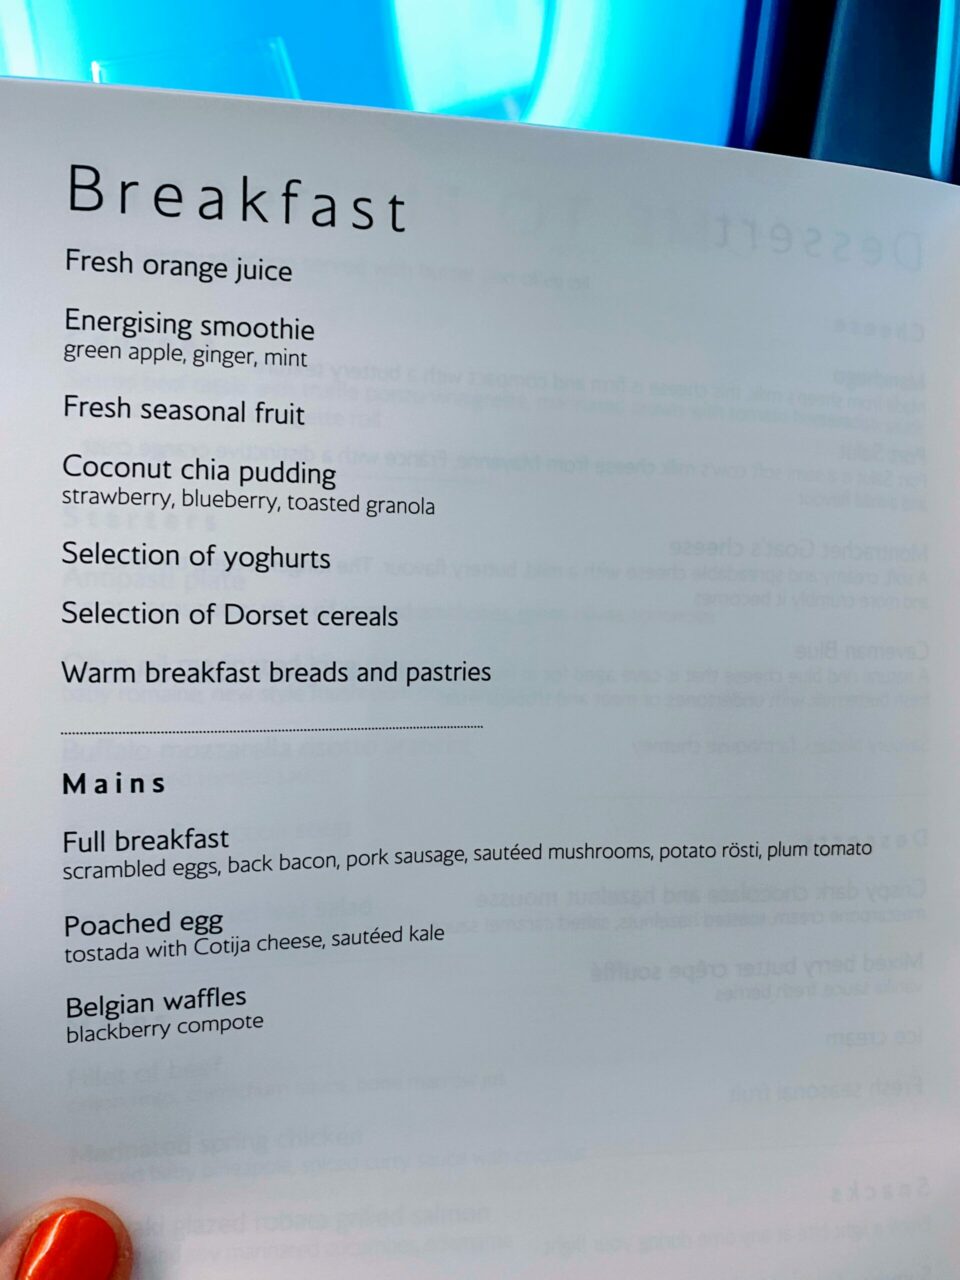 British Airways new first class suite menu breakfast